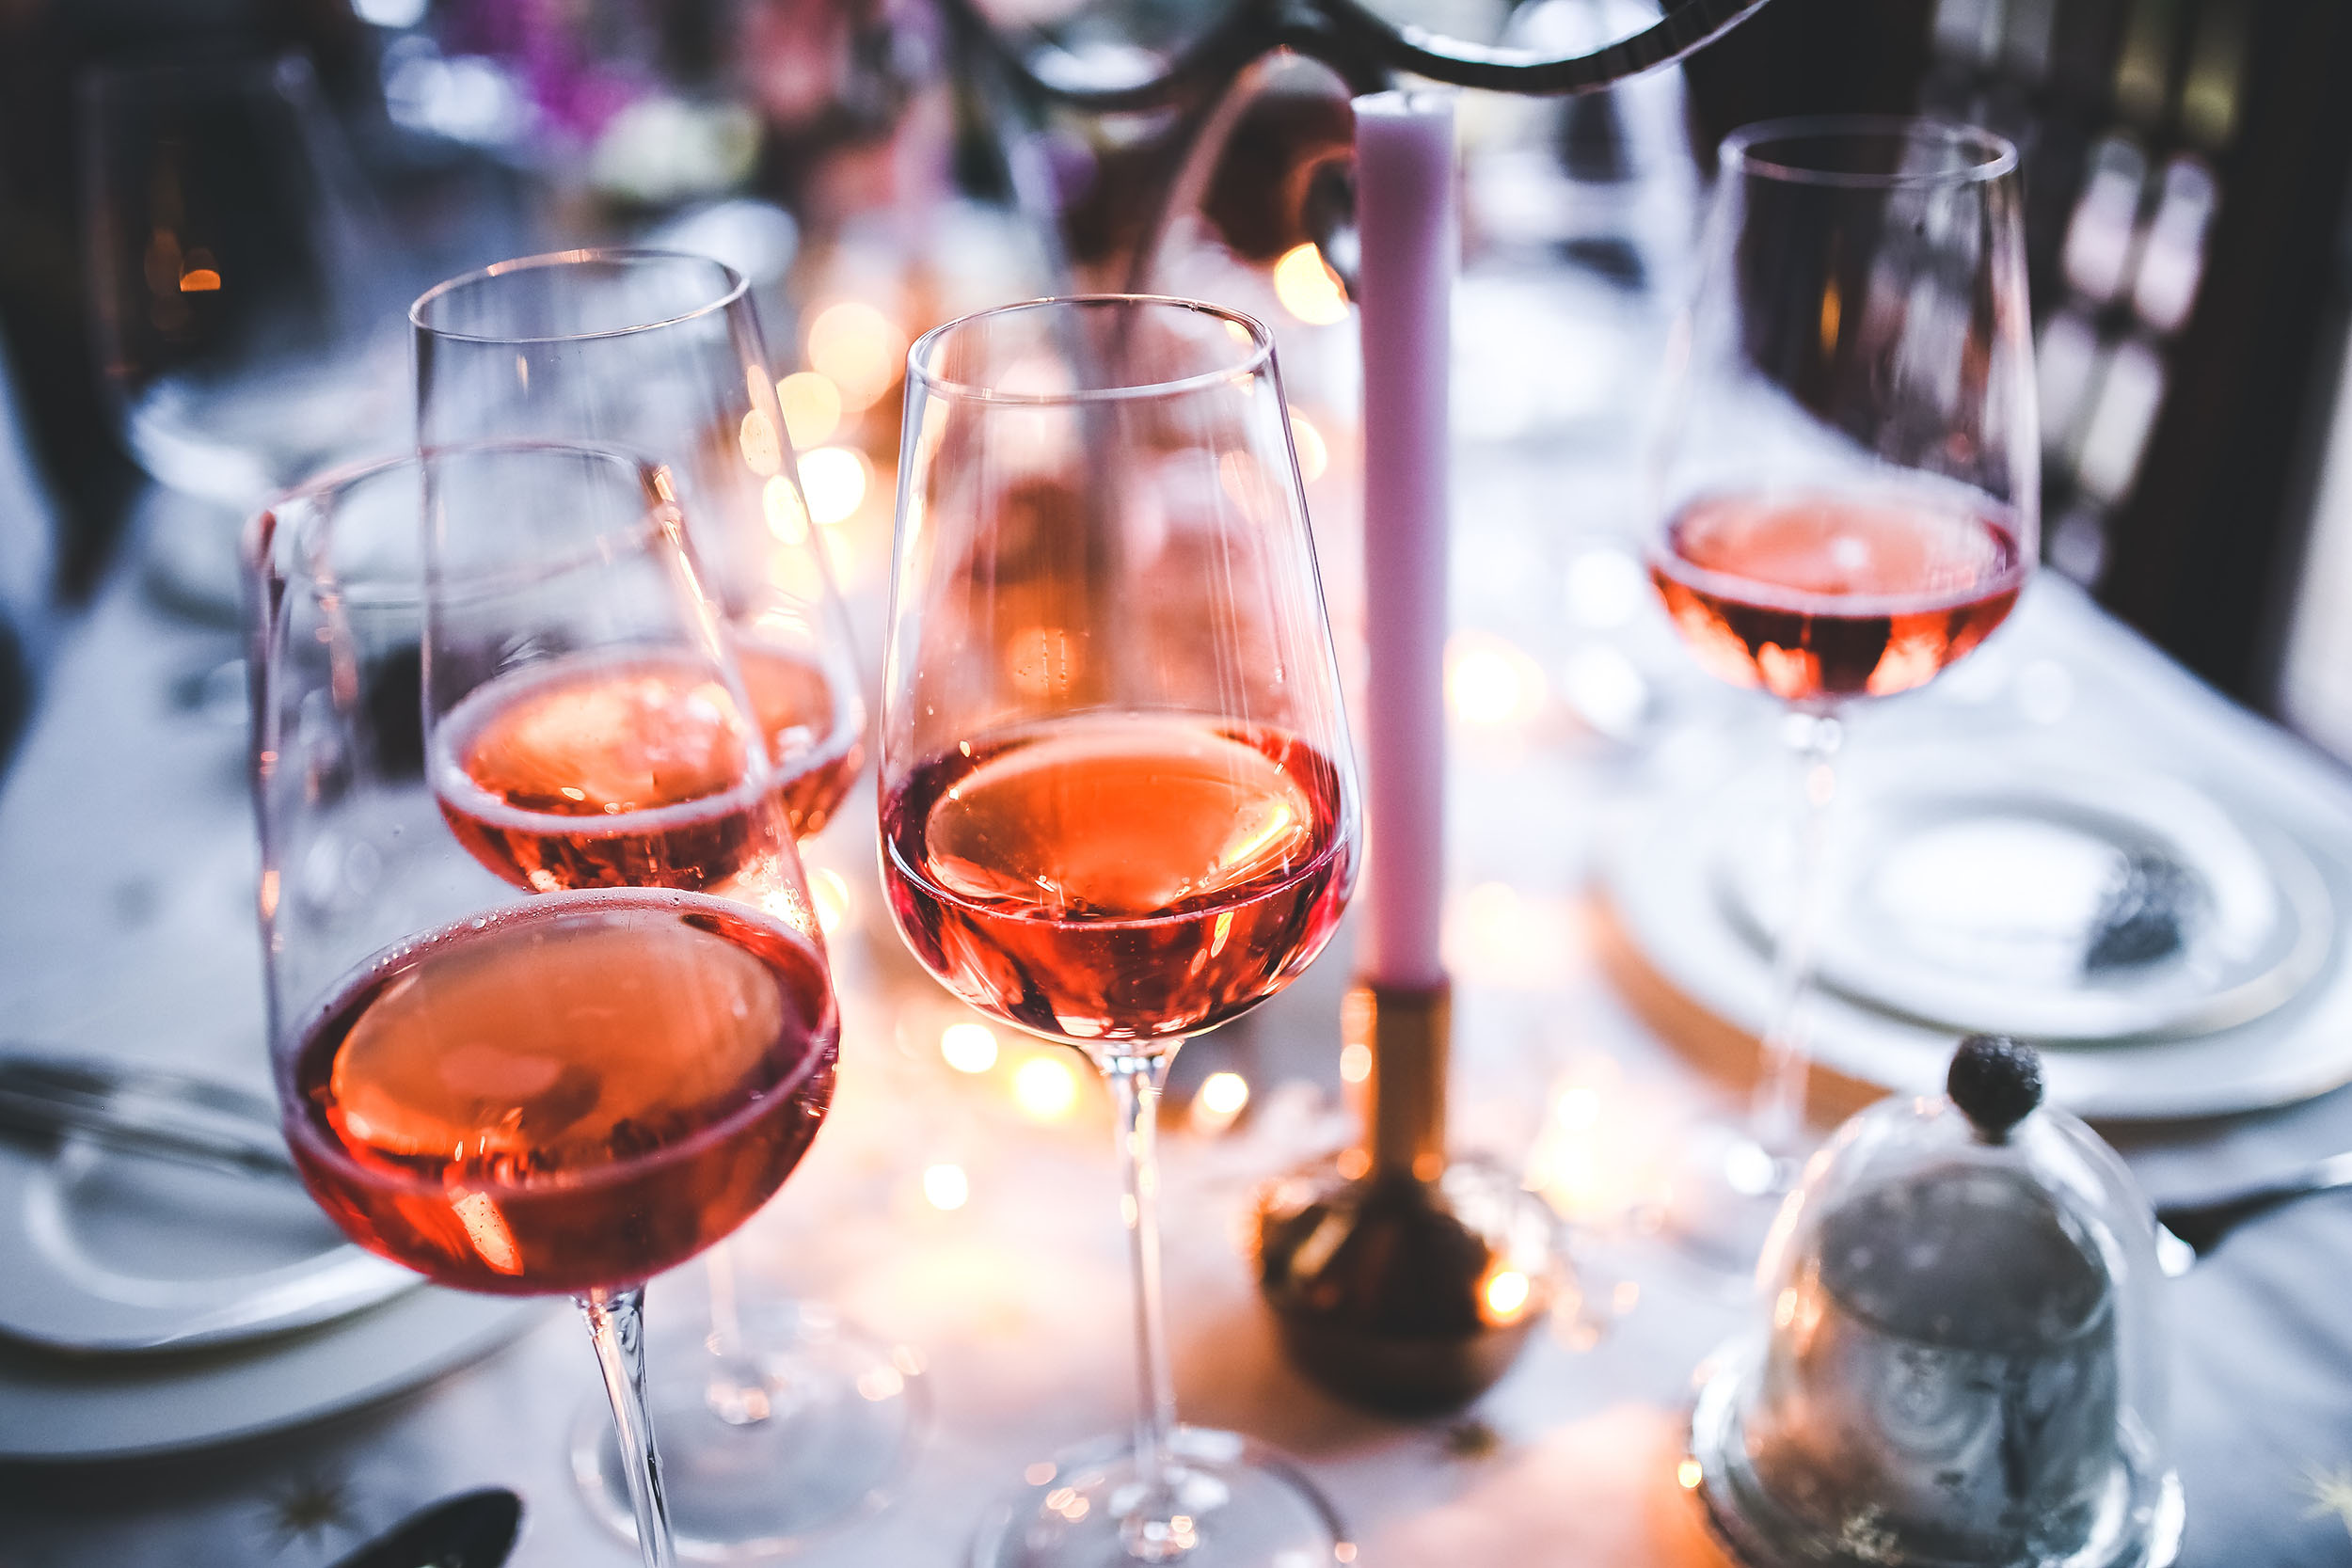 Weinhandlung, Weinverkostung und Weinkurse